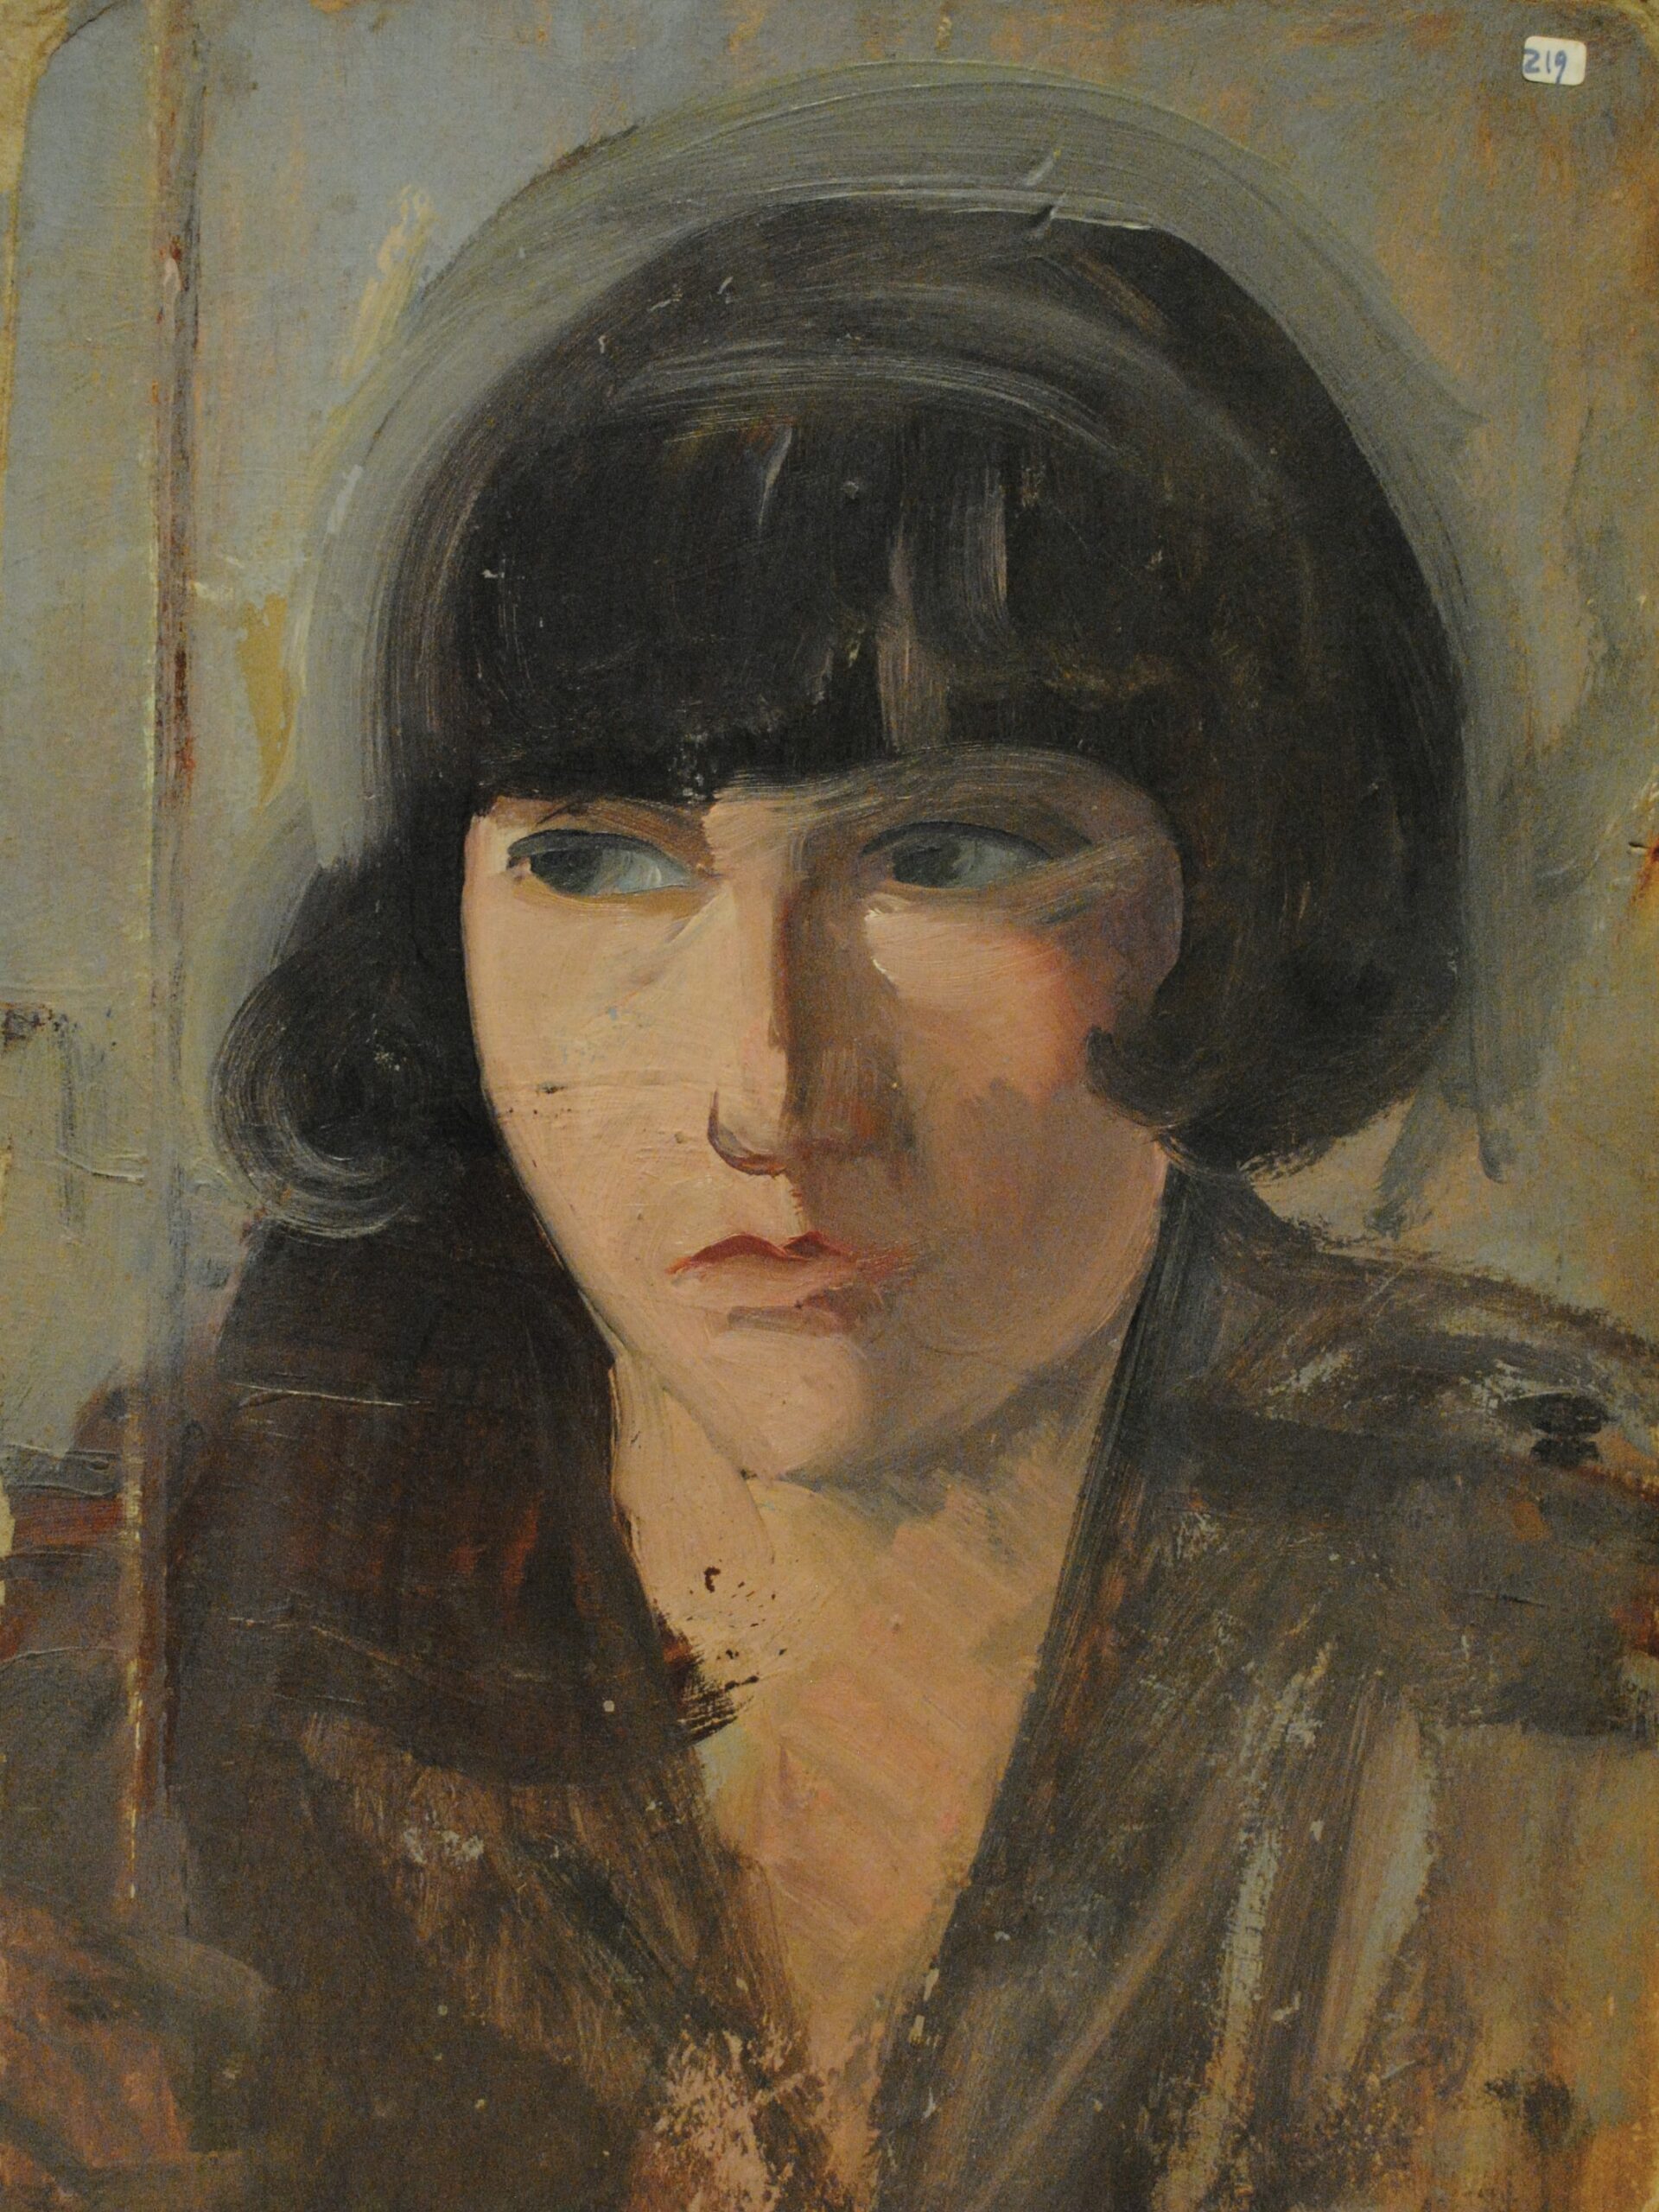 Pintura de José Manaut titulada ALita en París, 1925. Óleo sobre cartón.